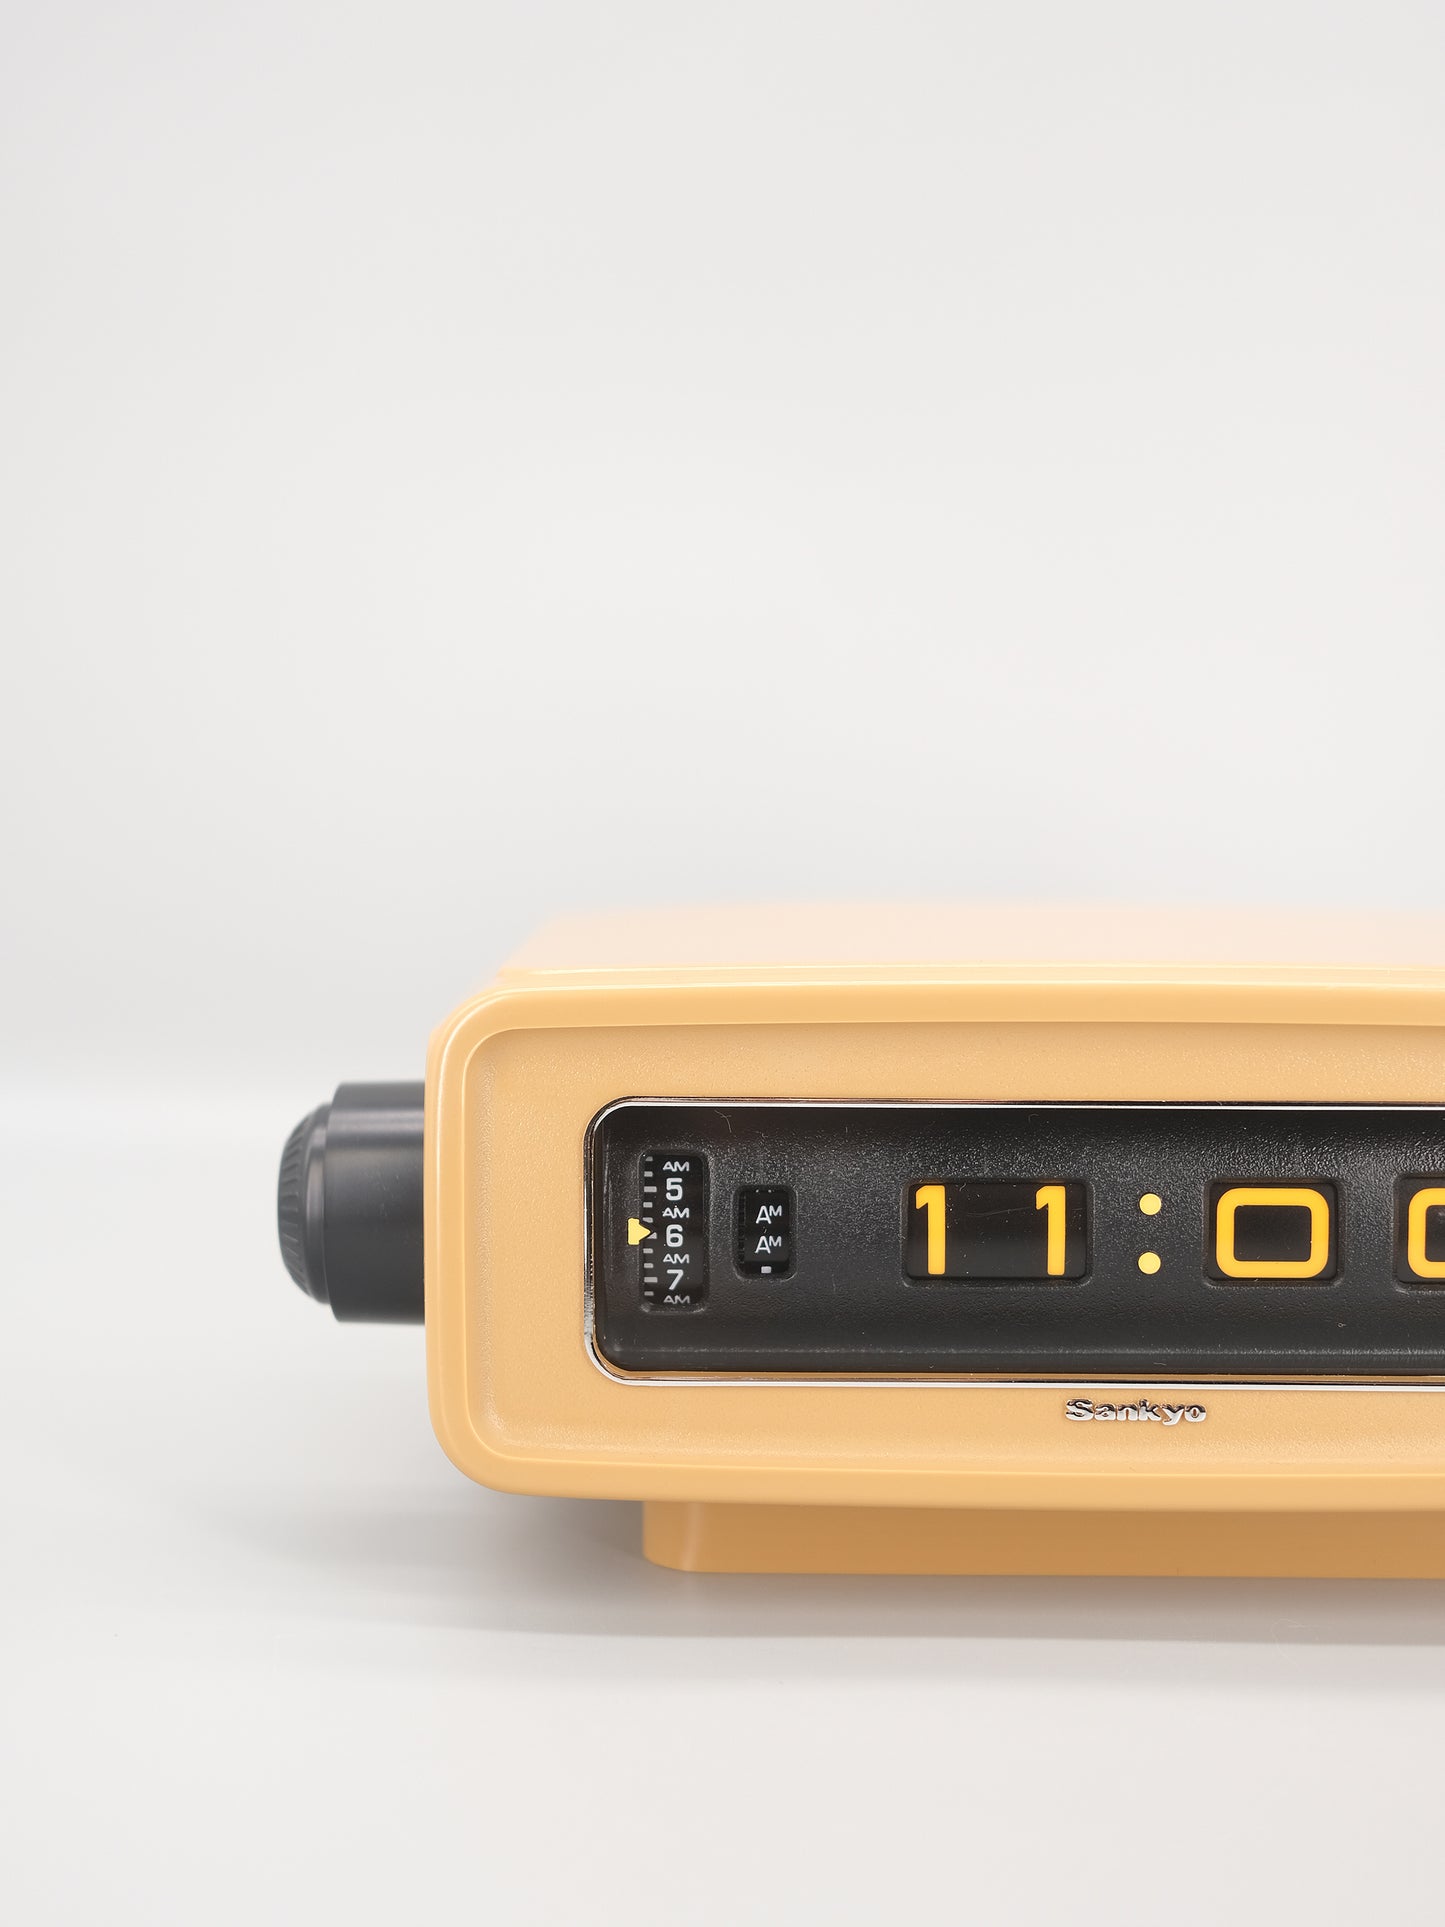 全新品 日本制 70s Sankyo DT-303 Digital Alarm Flip Clock 米色 翻頁鐘 有盒